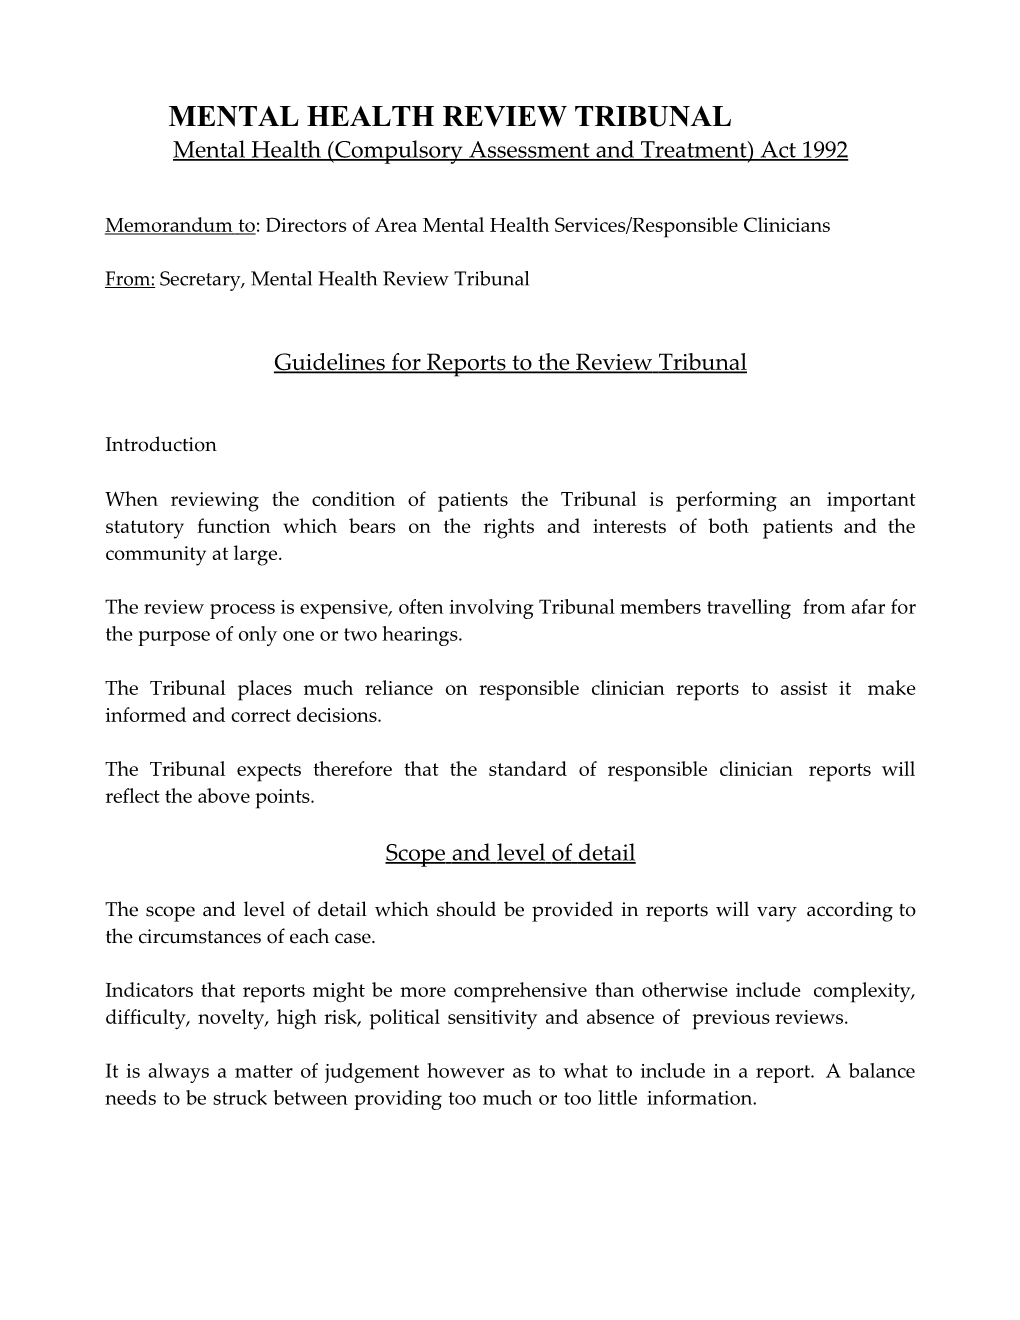 MHRT Memorandum To: Directors of Area Mental Health Services/Responsible Clinicians